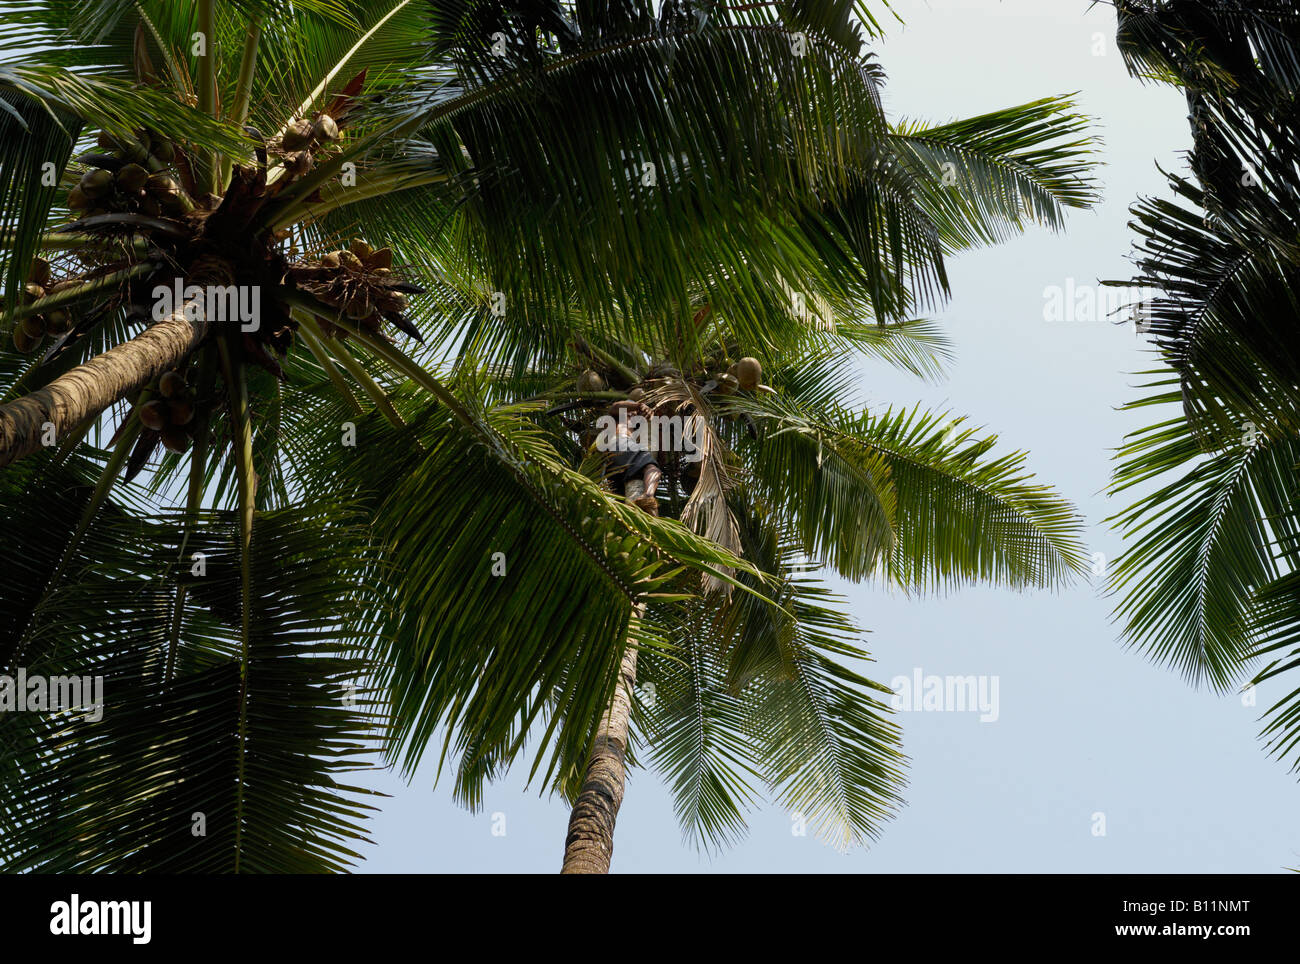 Man climbing coconut tree Stock Photo